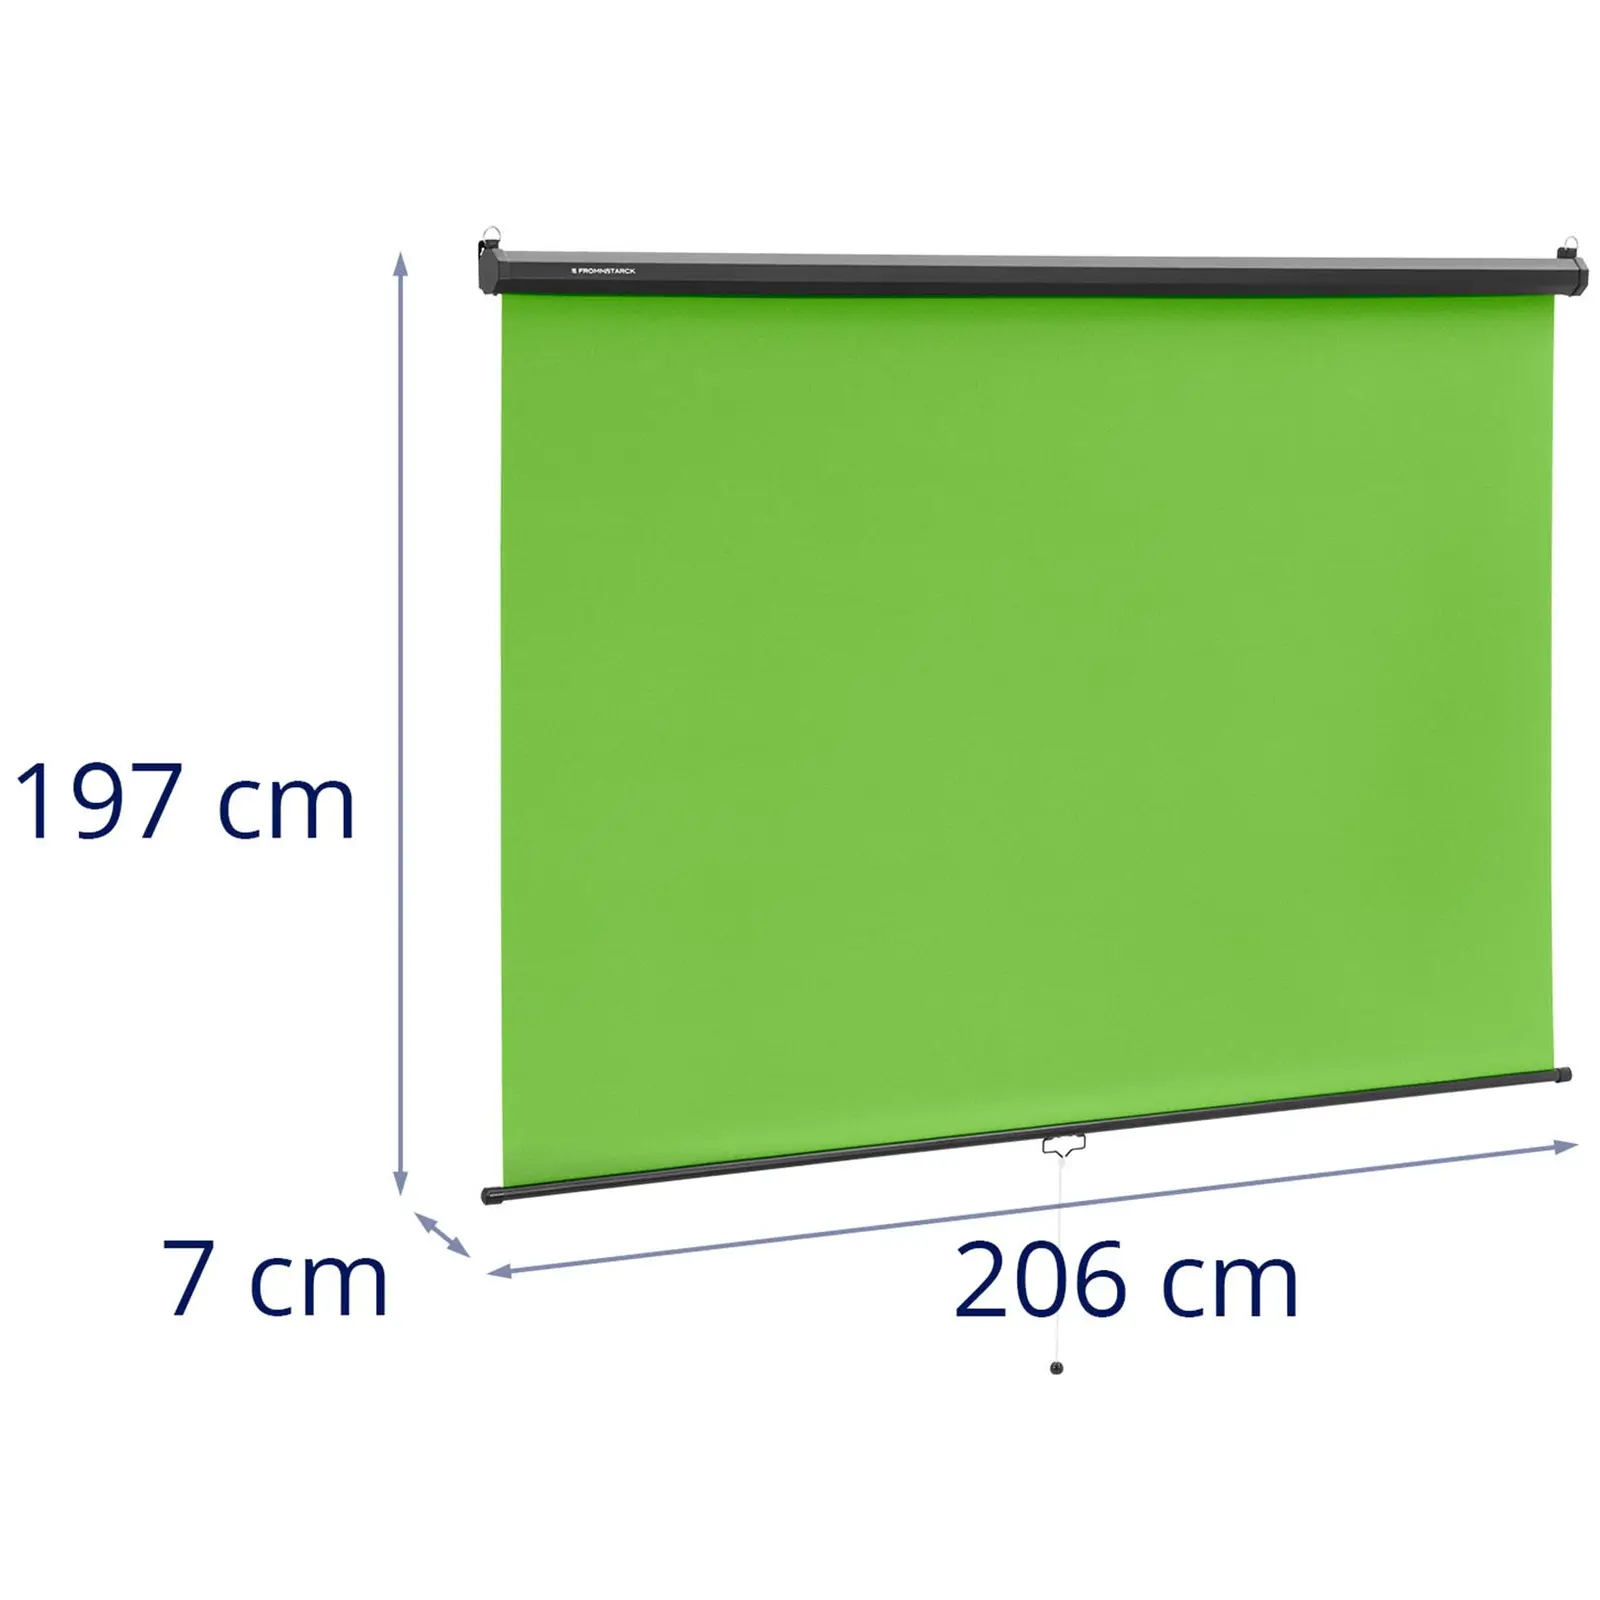 Zelené pozadí - rolovací - na stěnu a strop - 84" - 2 060 x 1 813 mm